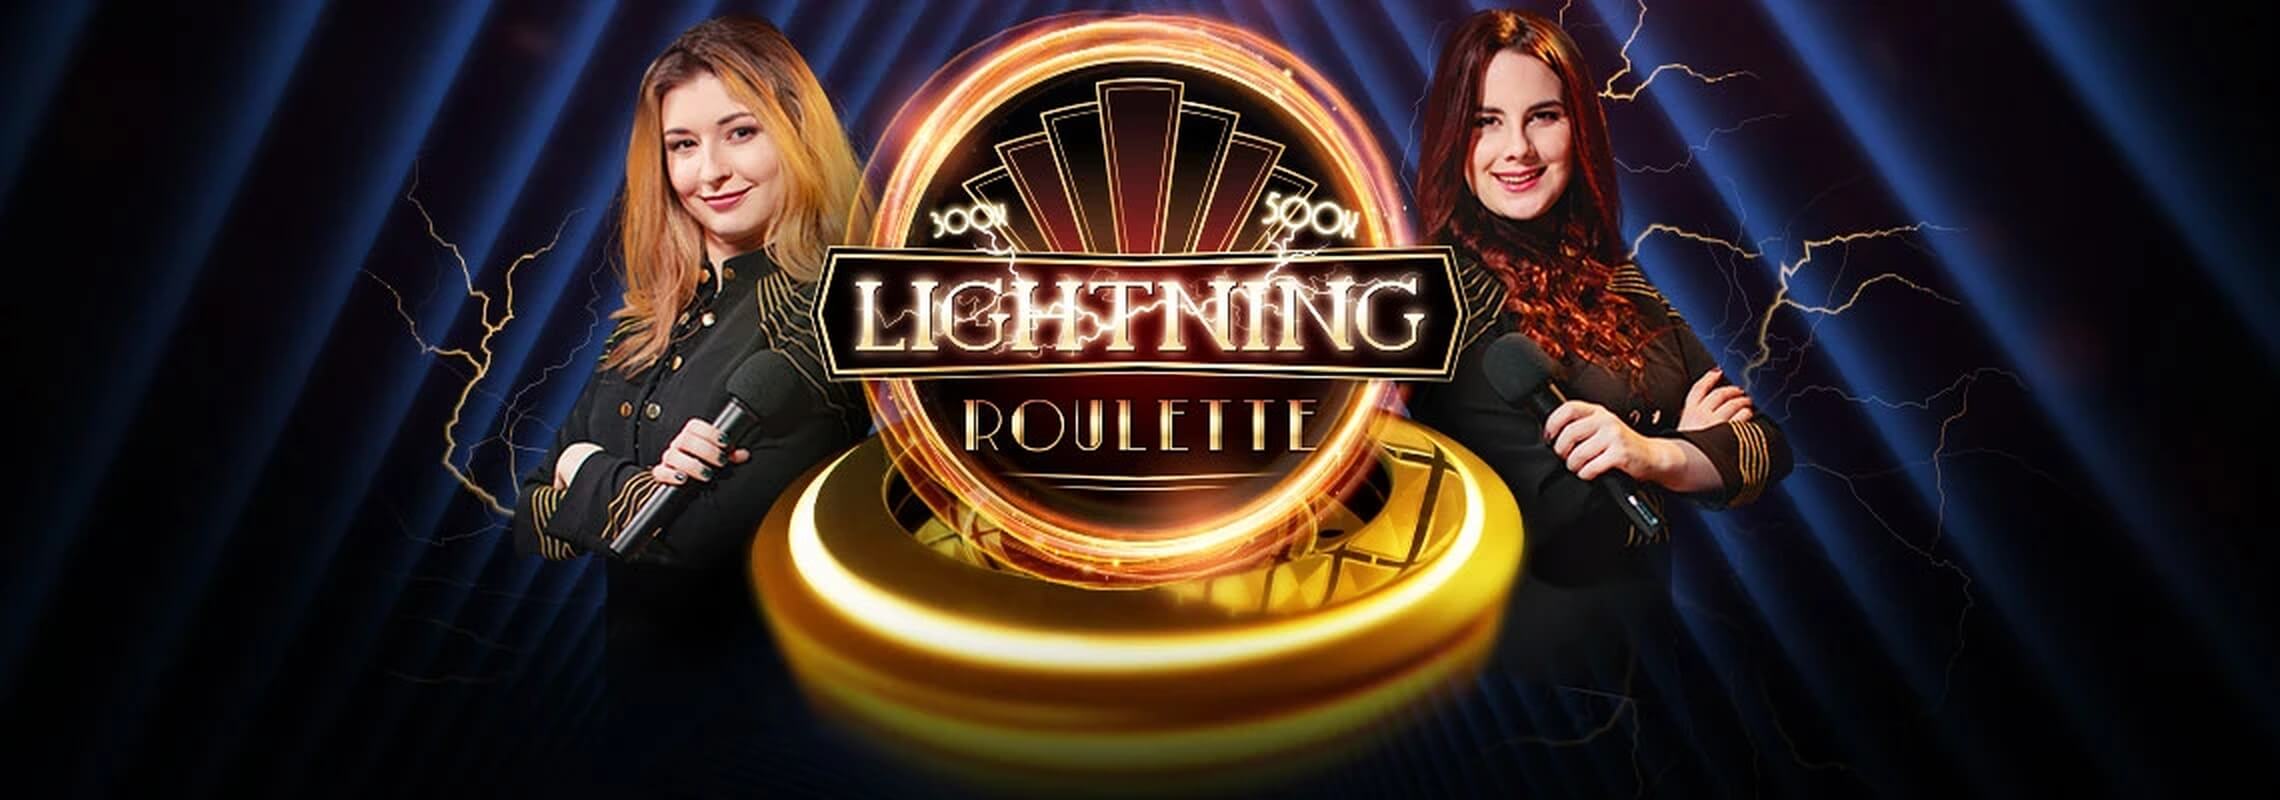 Lightning Roulette - Speciální funkce a bonusové hry